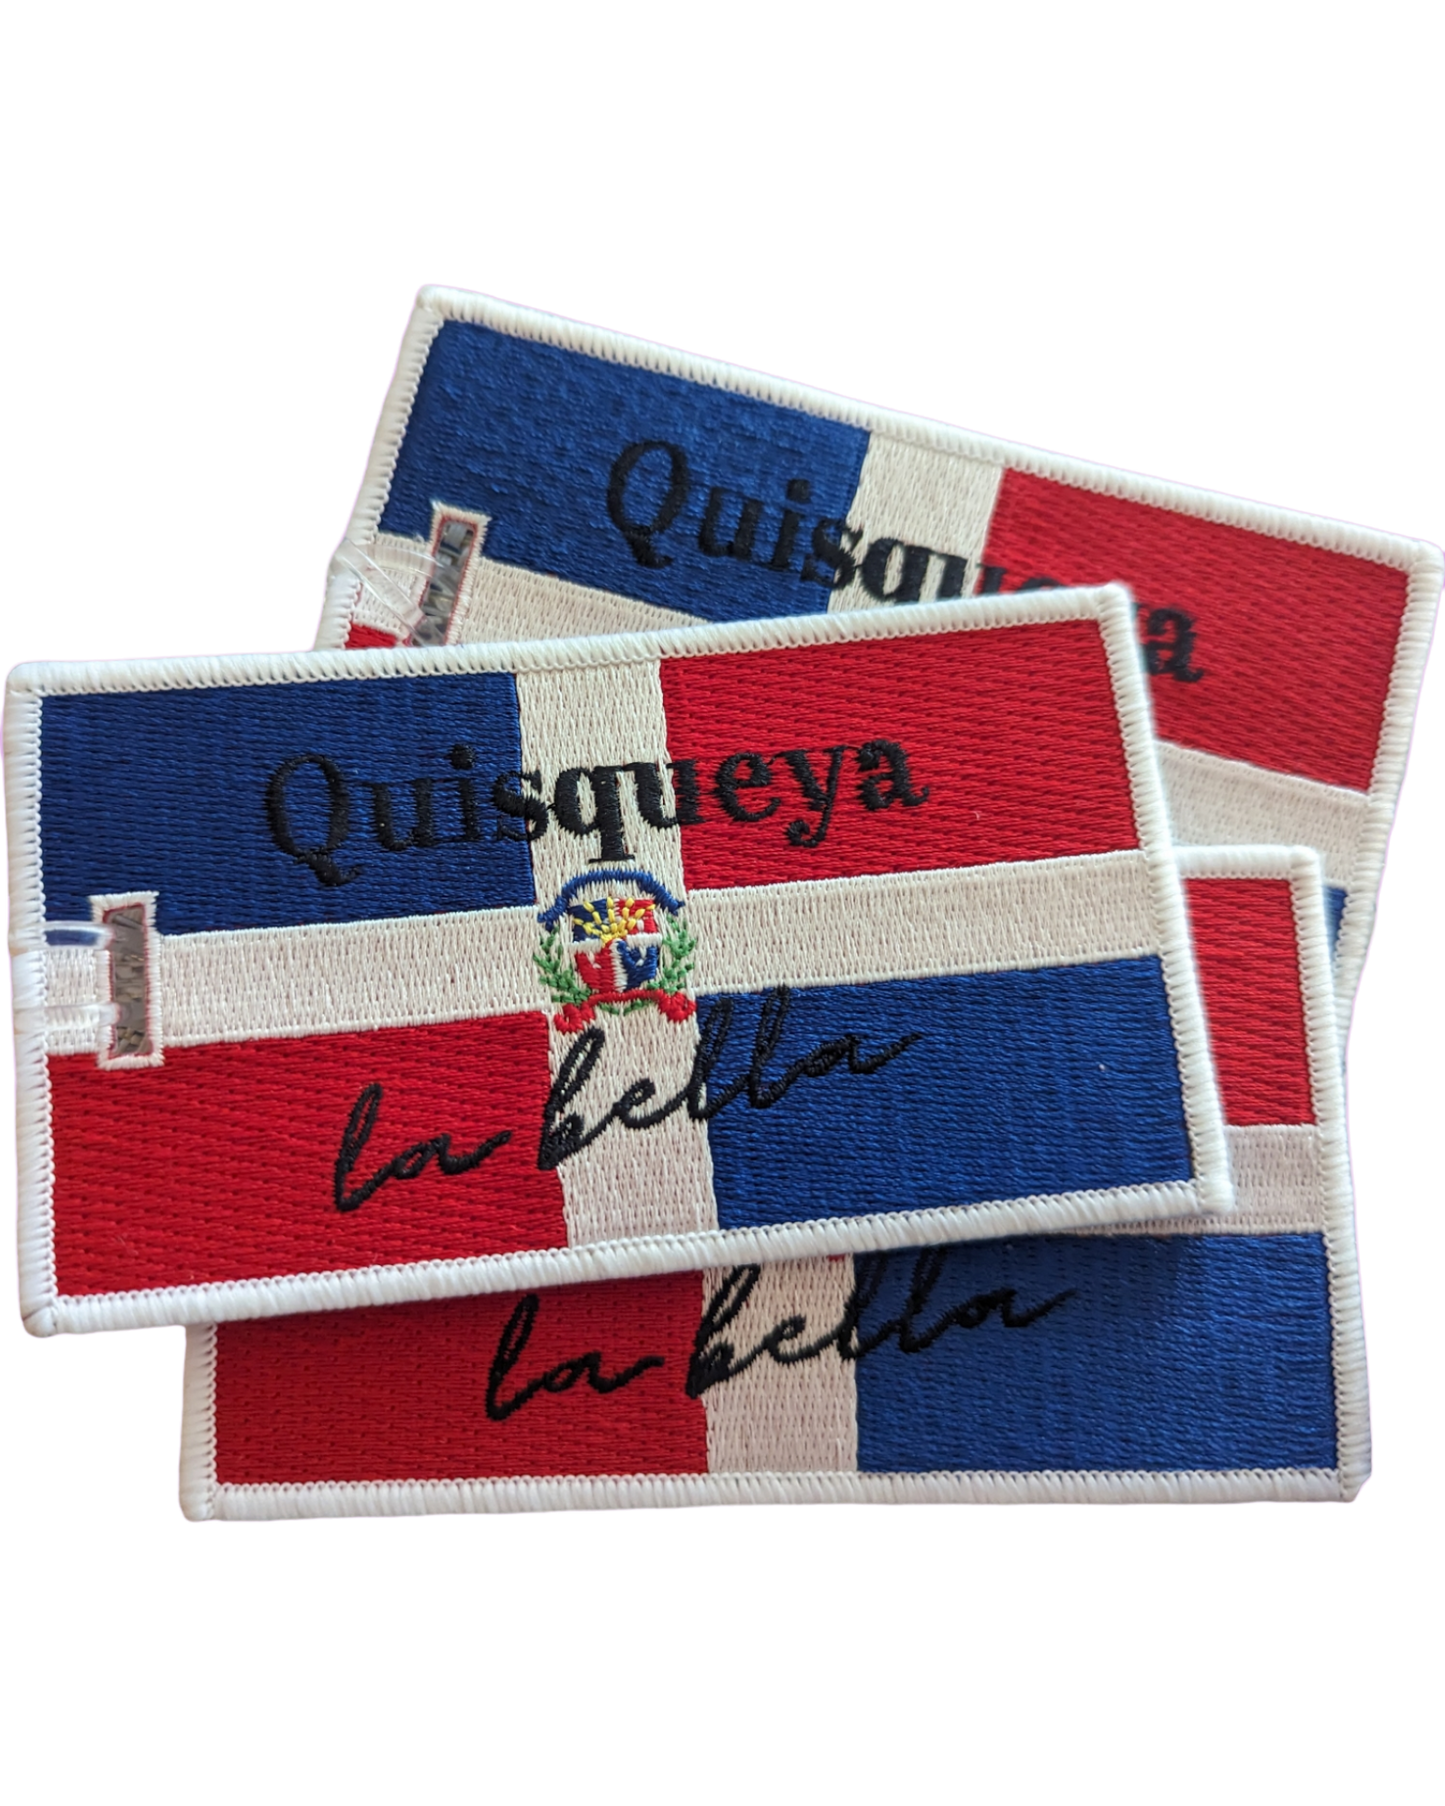 Quisqueya La Bella! DR Flag Luggage Tag